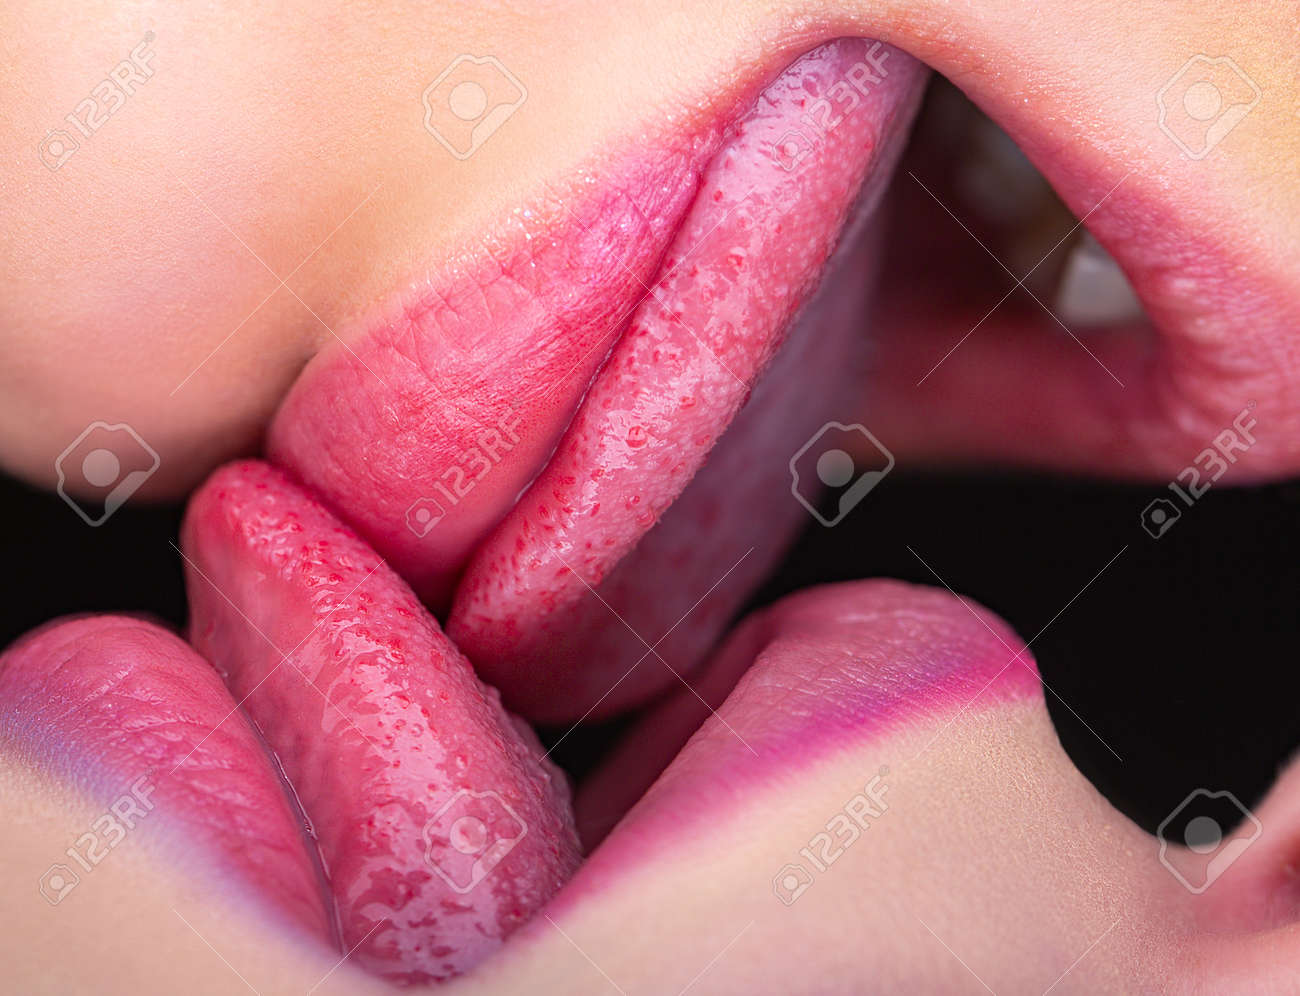 christine combes recommends imagenes de besos de lengua pic